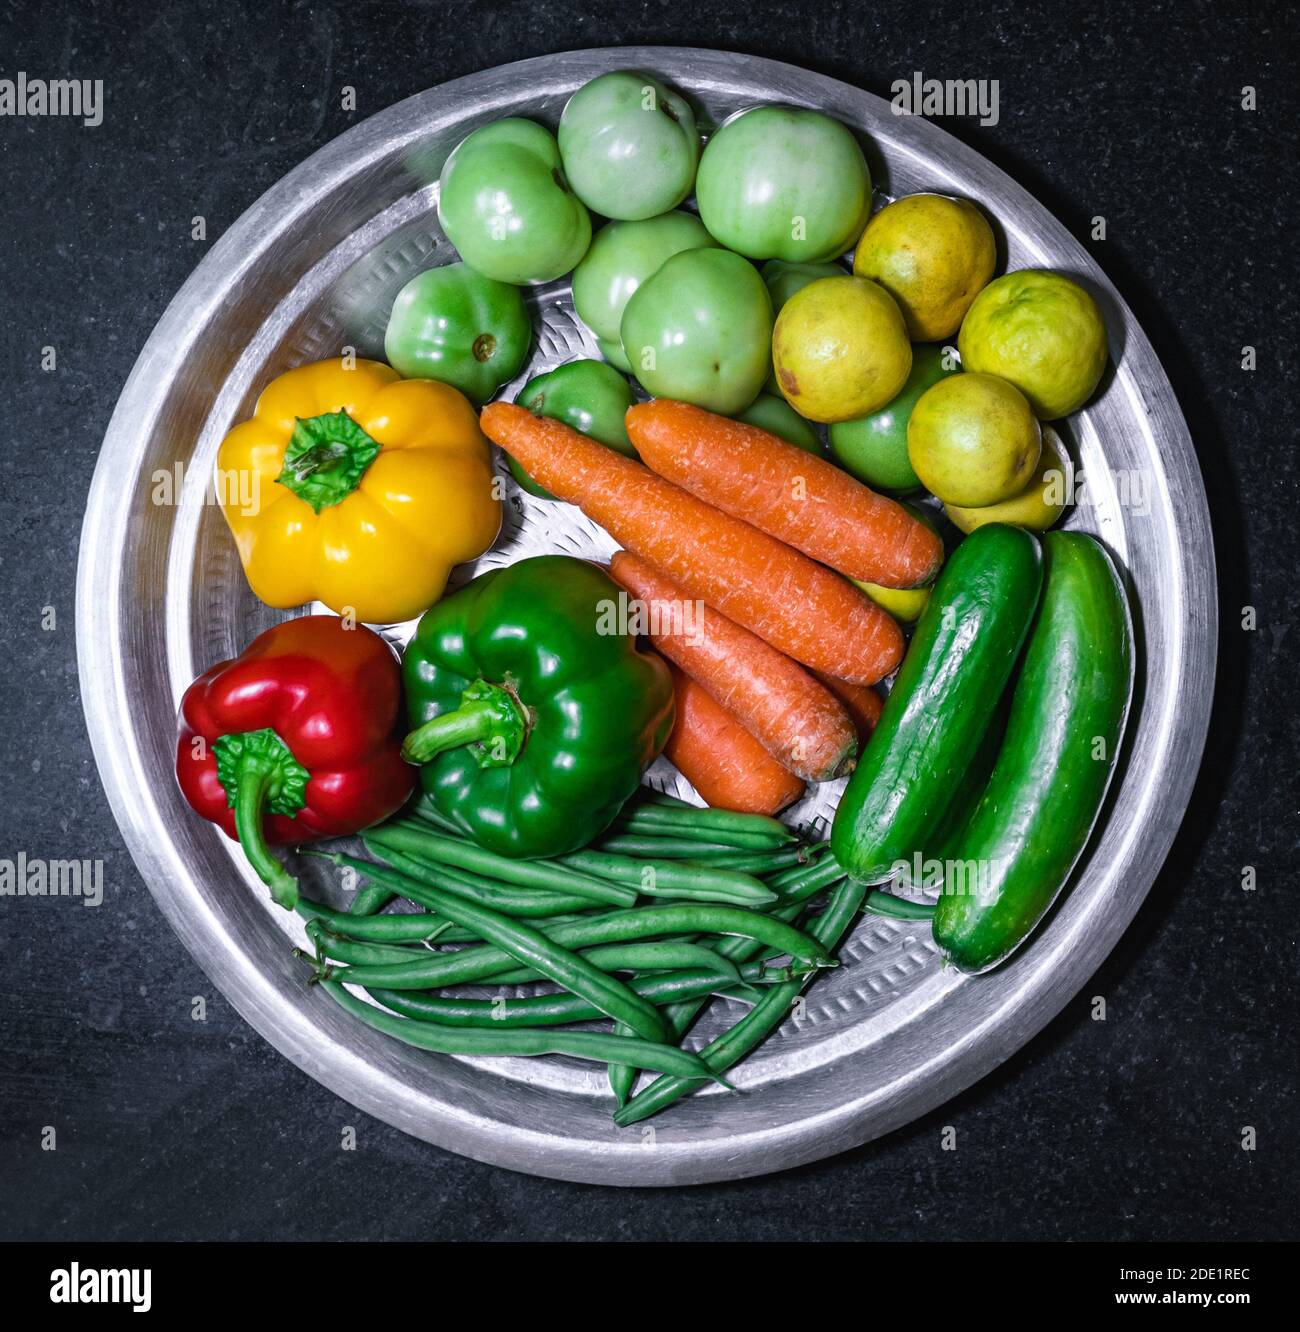 Grüne Bohnen, rote Paprika, gelbe Paprika, grüne Paprika, Karotten, Gurken, grüne Tomaten und Zitronen auf einer Edelstahlplatte Stockfoto